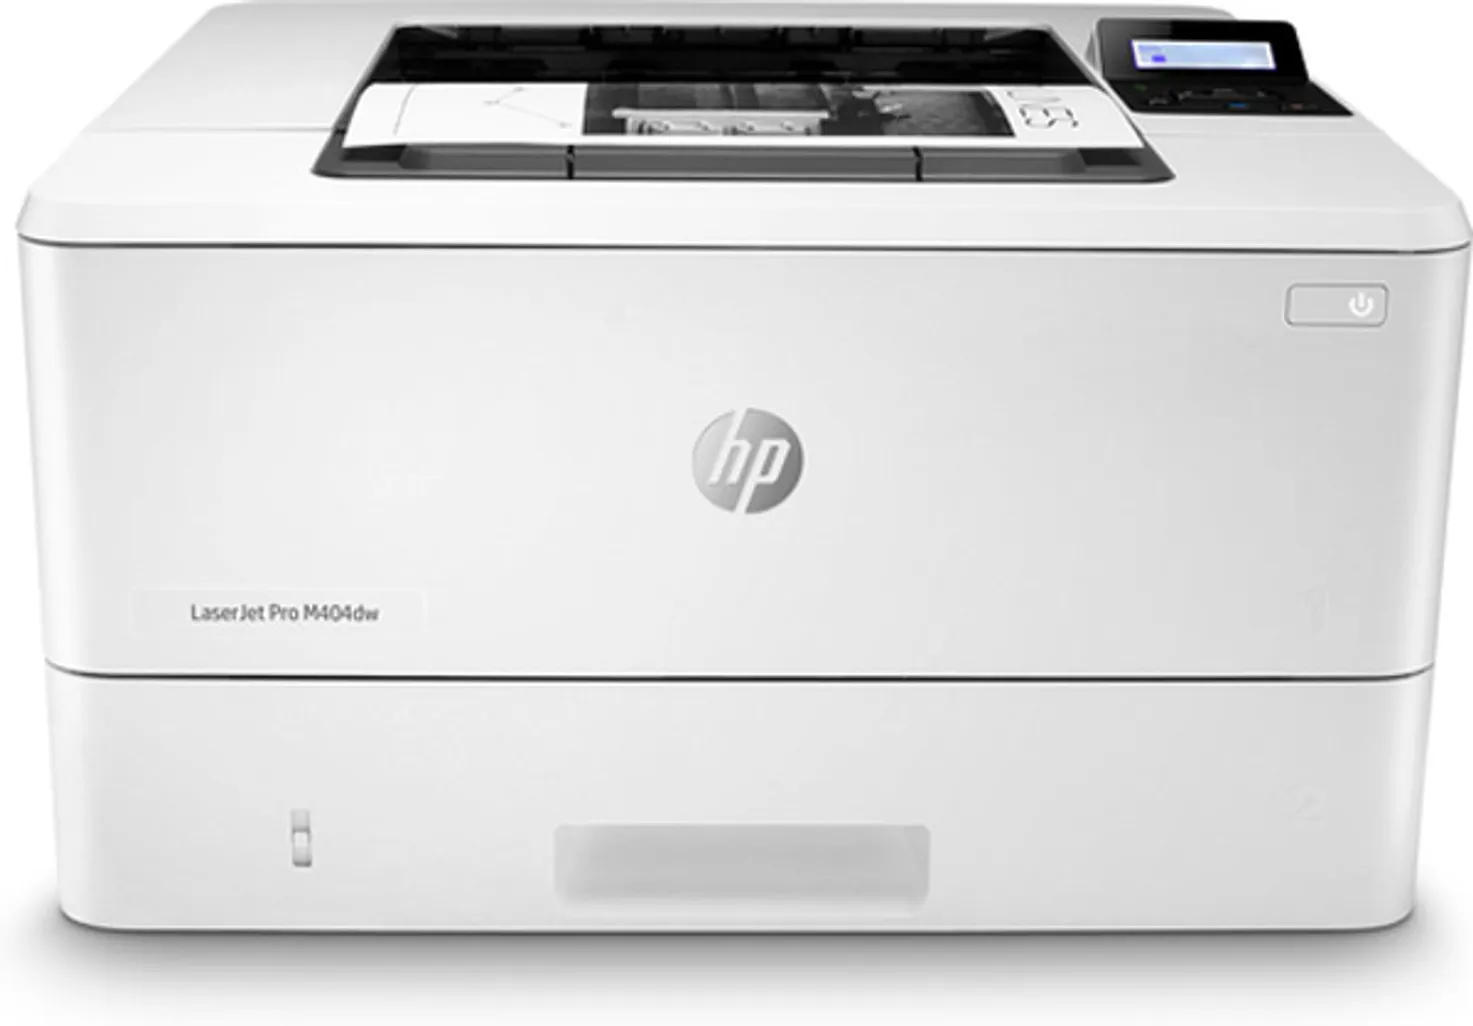 laserjet pro m404dw printer